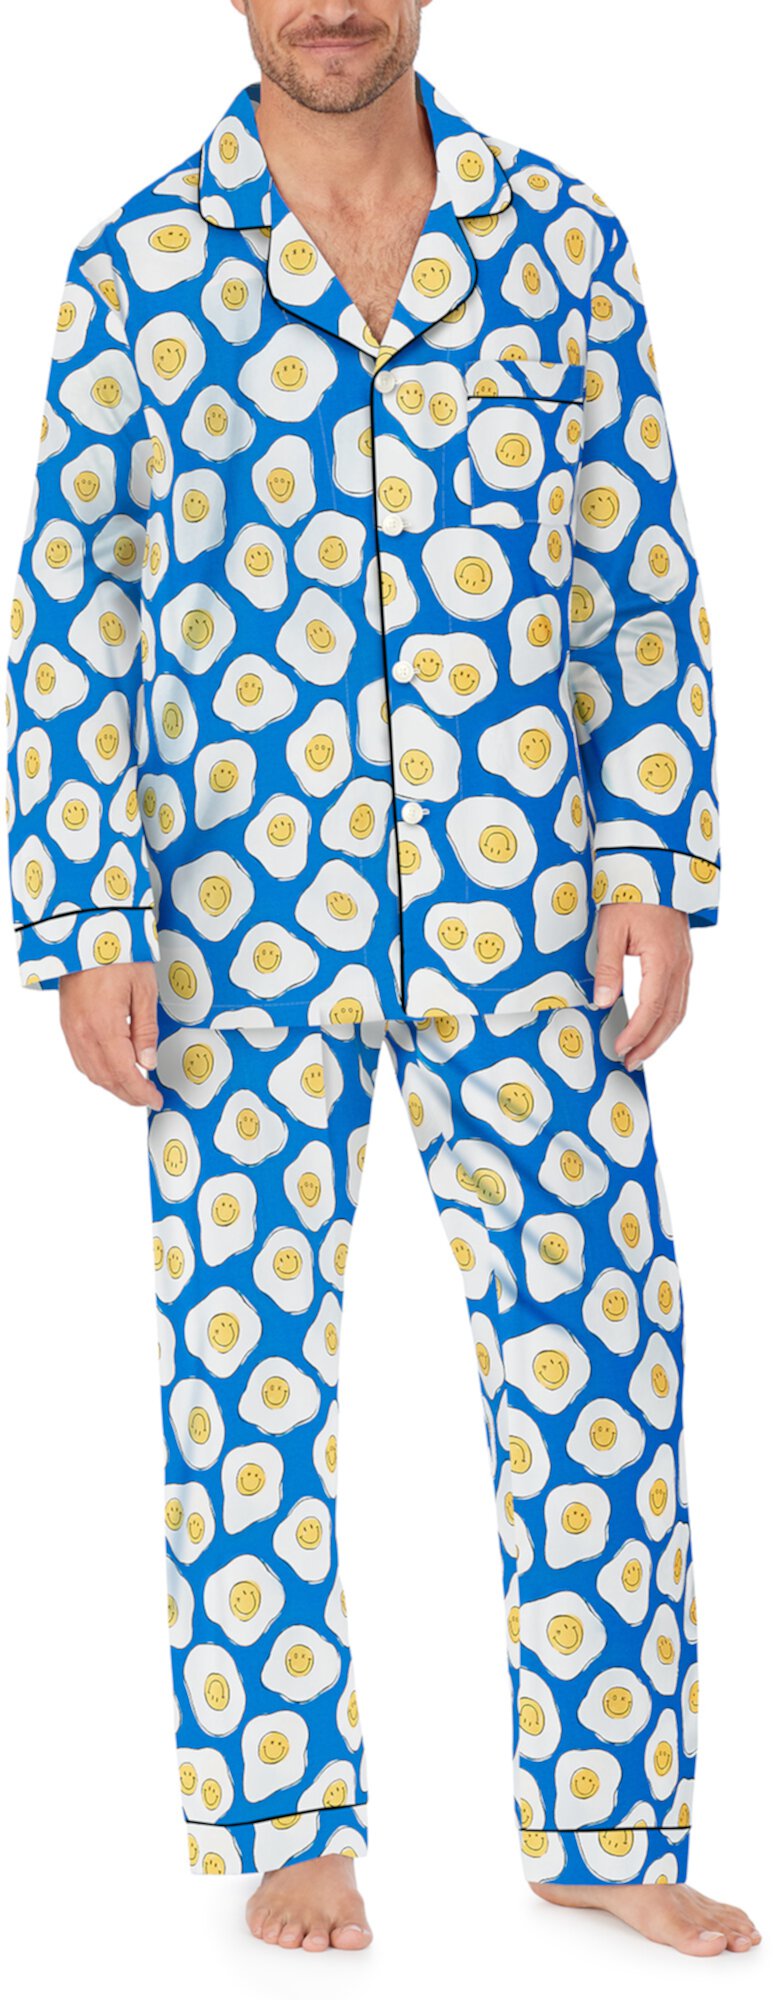 Zappos Print Lab: классический пижамный комплект Sunny Side Up с длинными рукавами BedHead